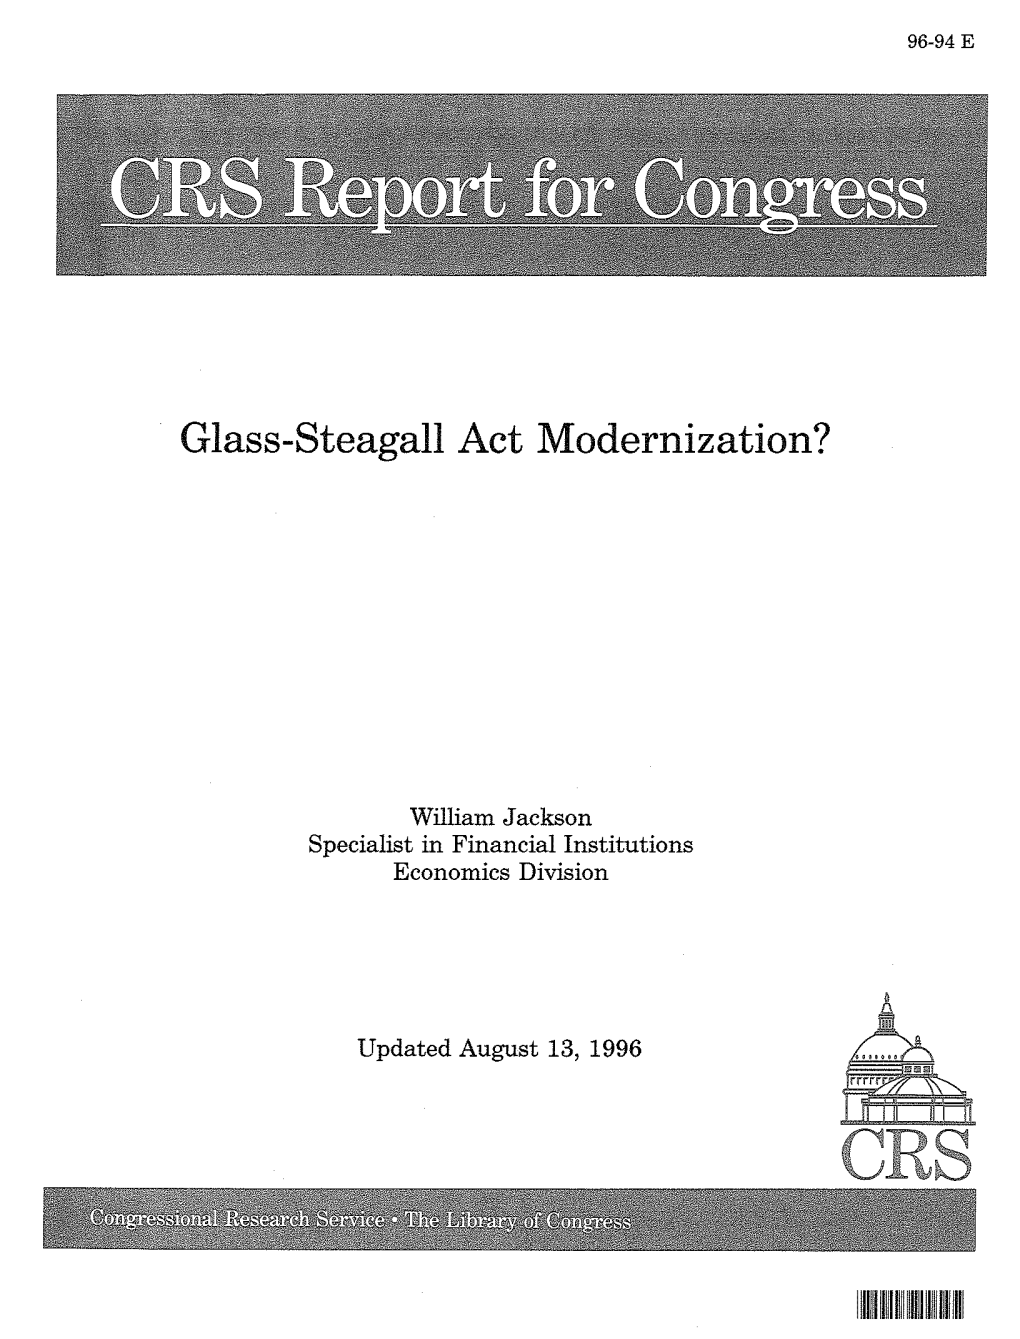 Glass-Steagall Act Modernization?